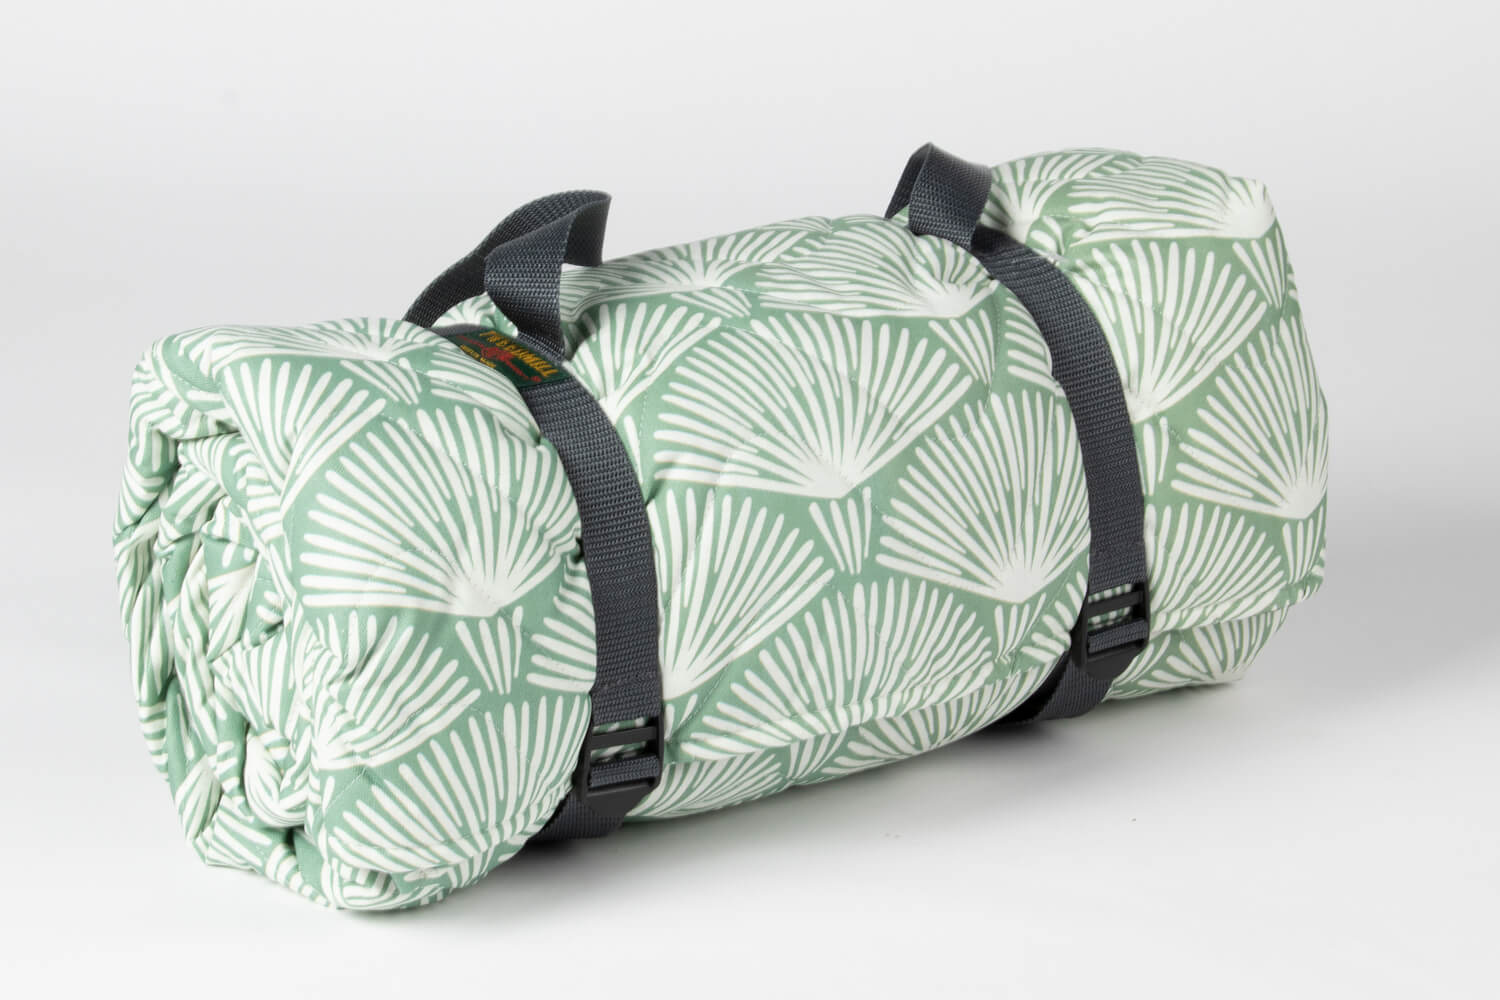 Picknickkleed wit groen - Snel in gratis verzonden